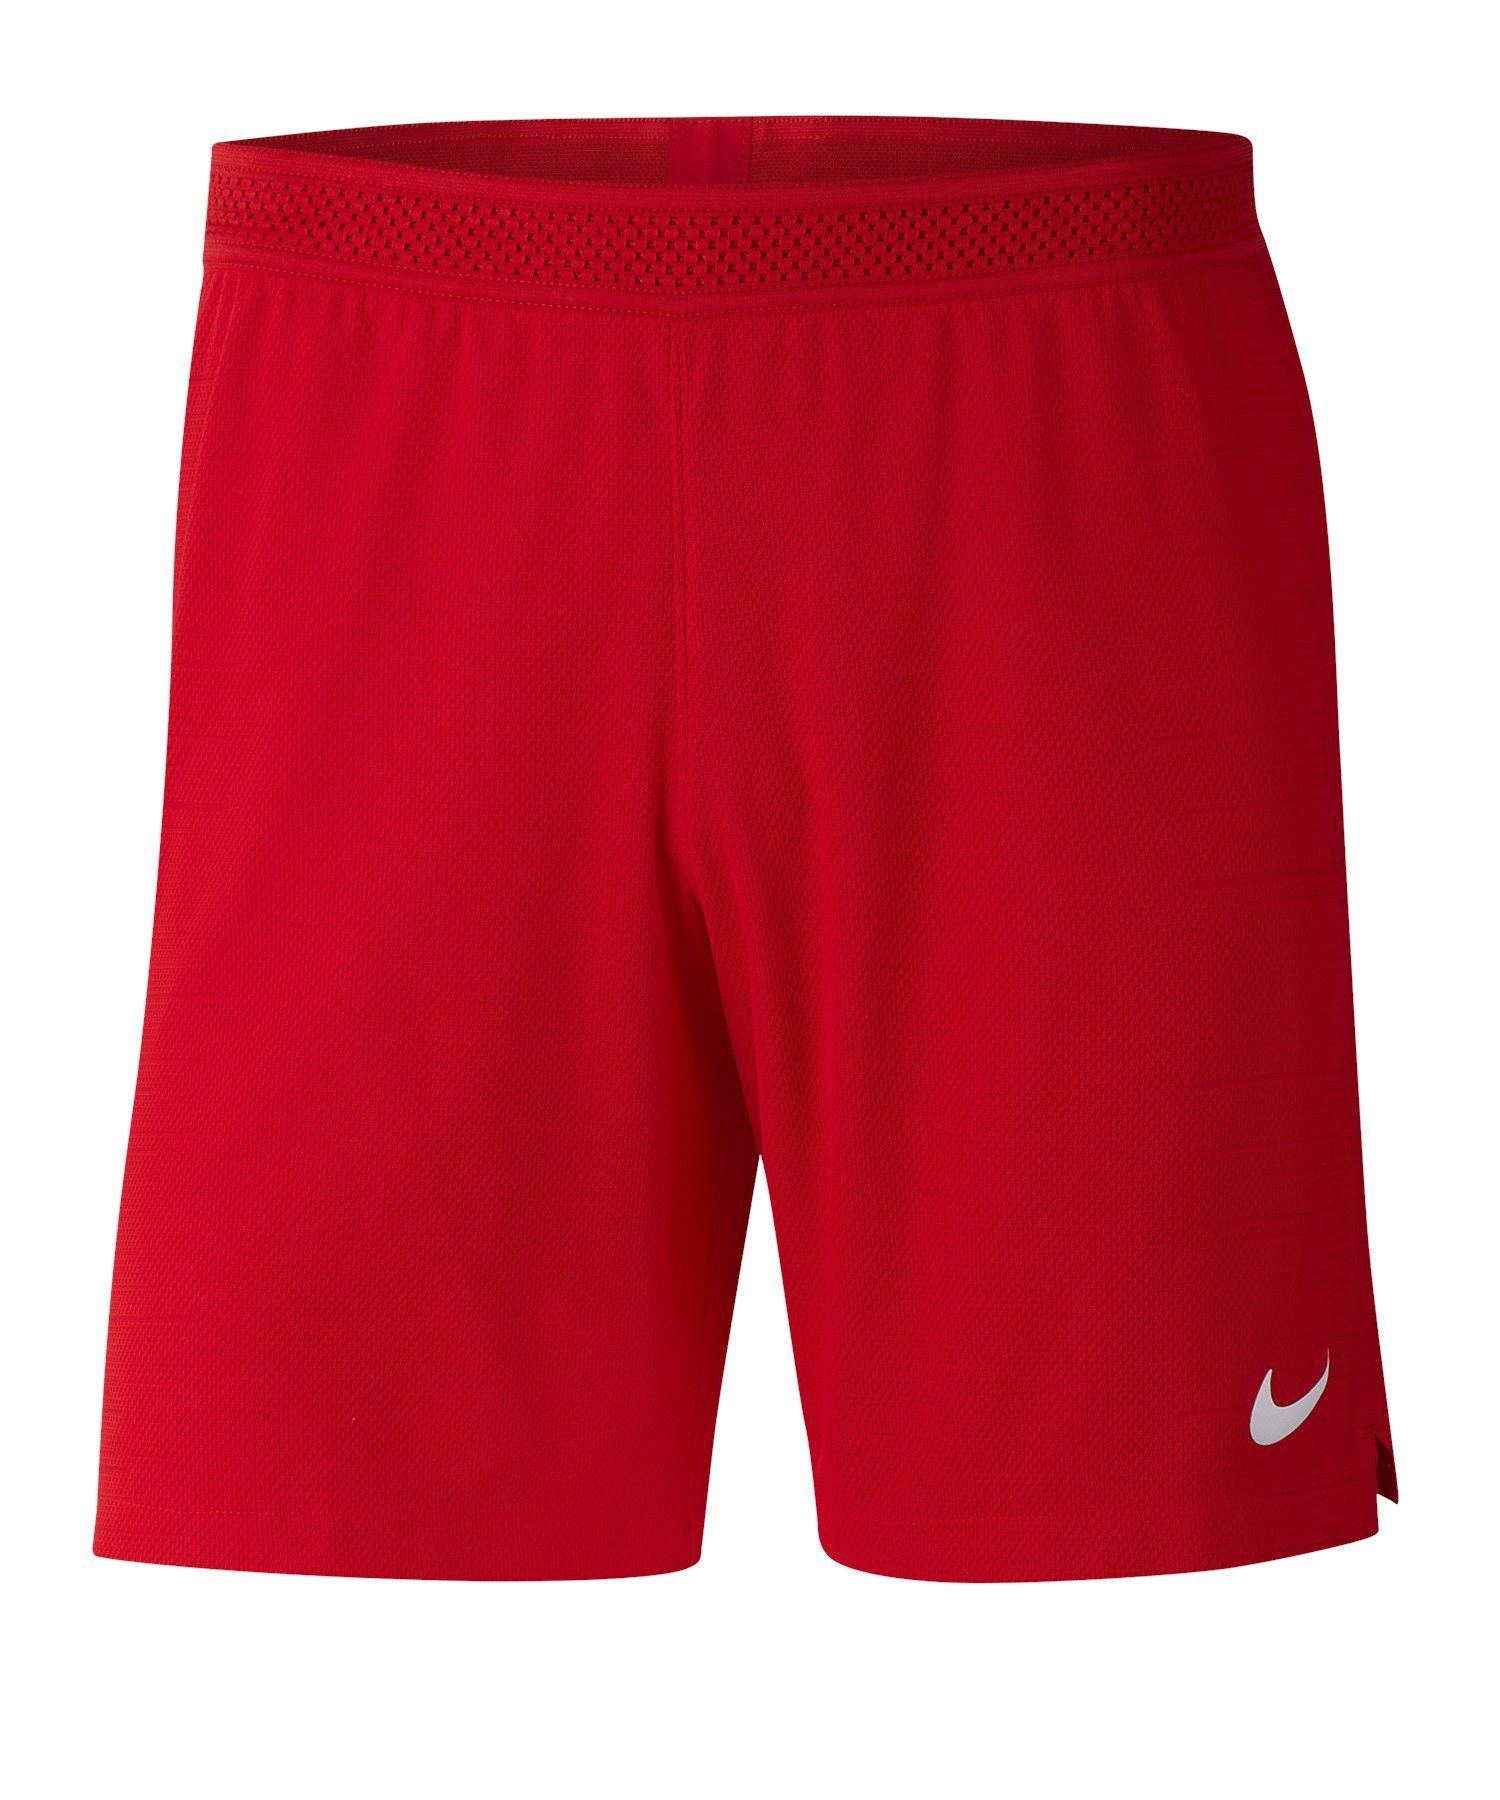 Nike Sporthose Vaporknit II Short rot